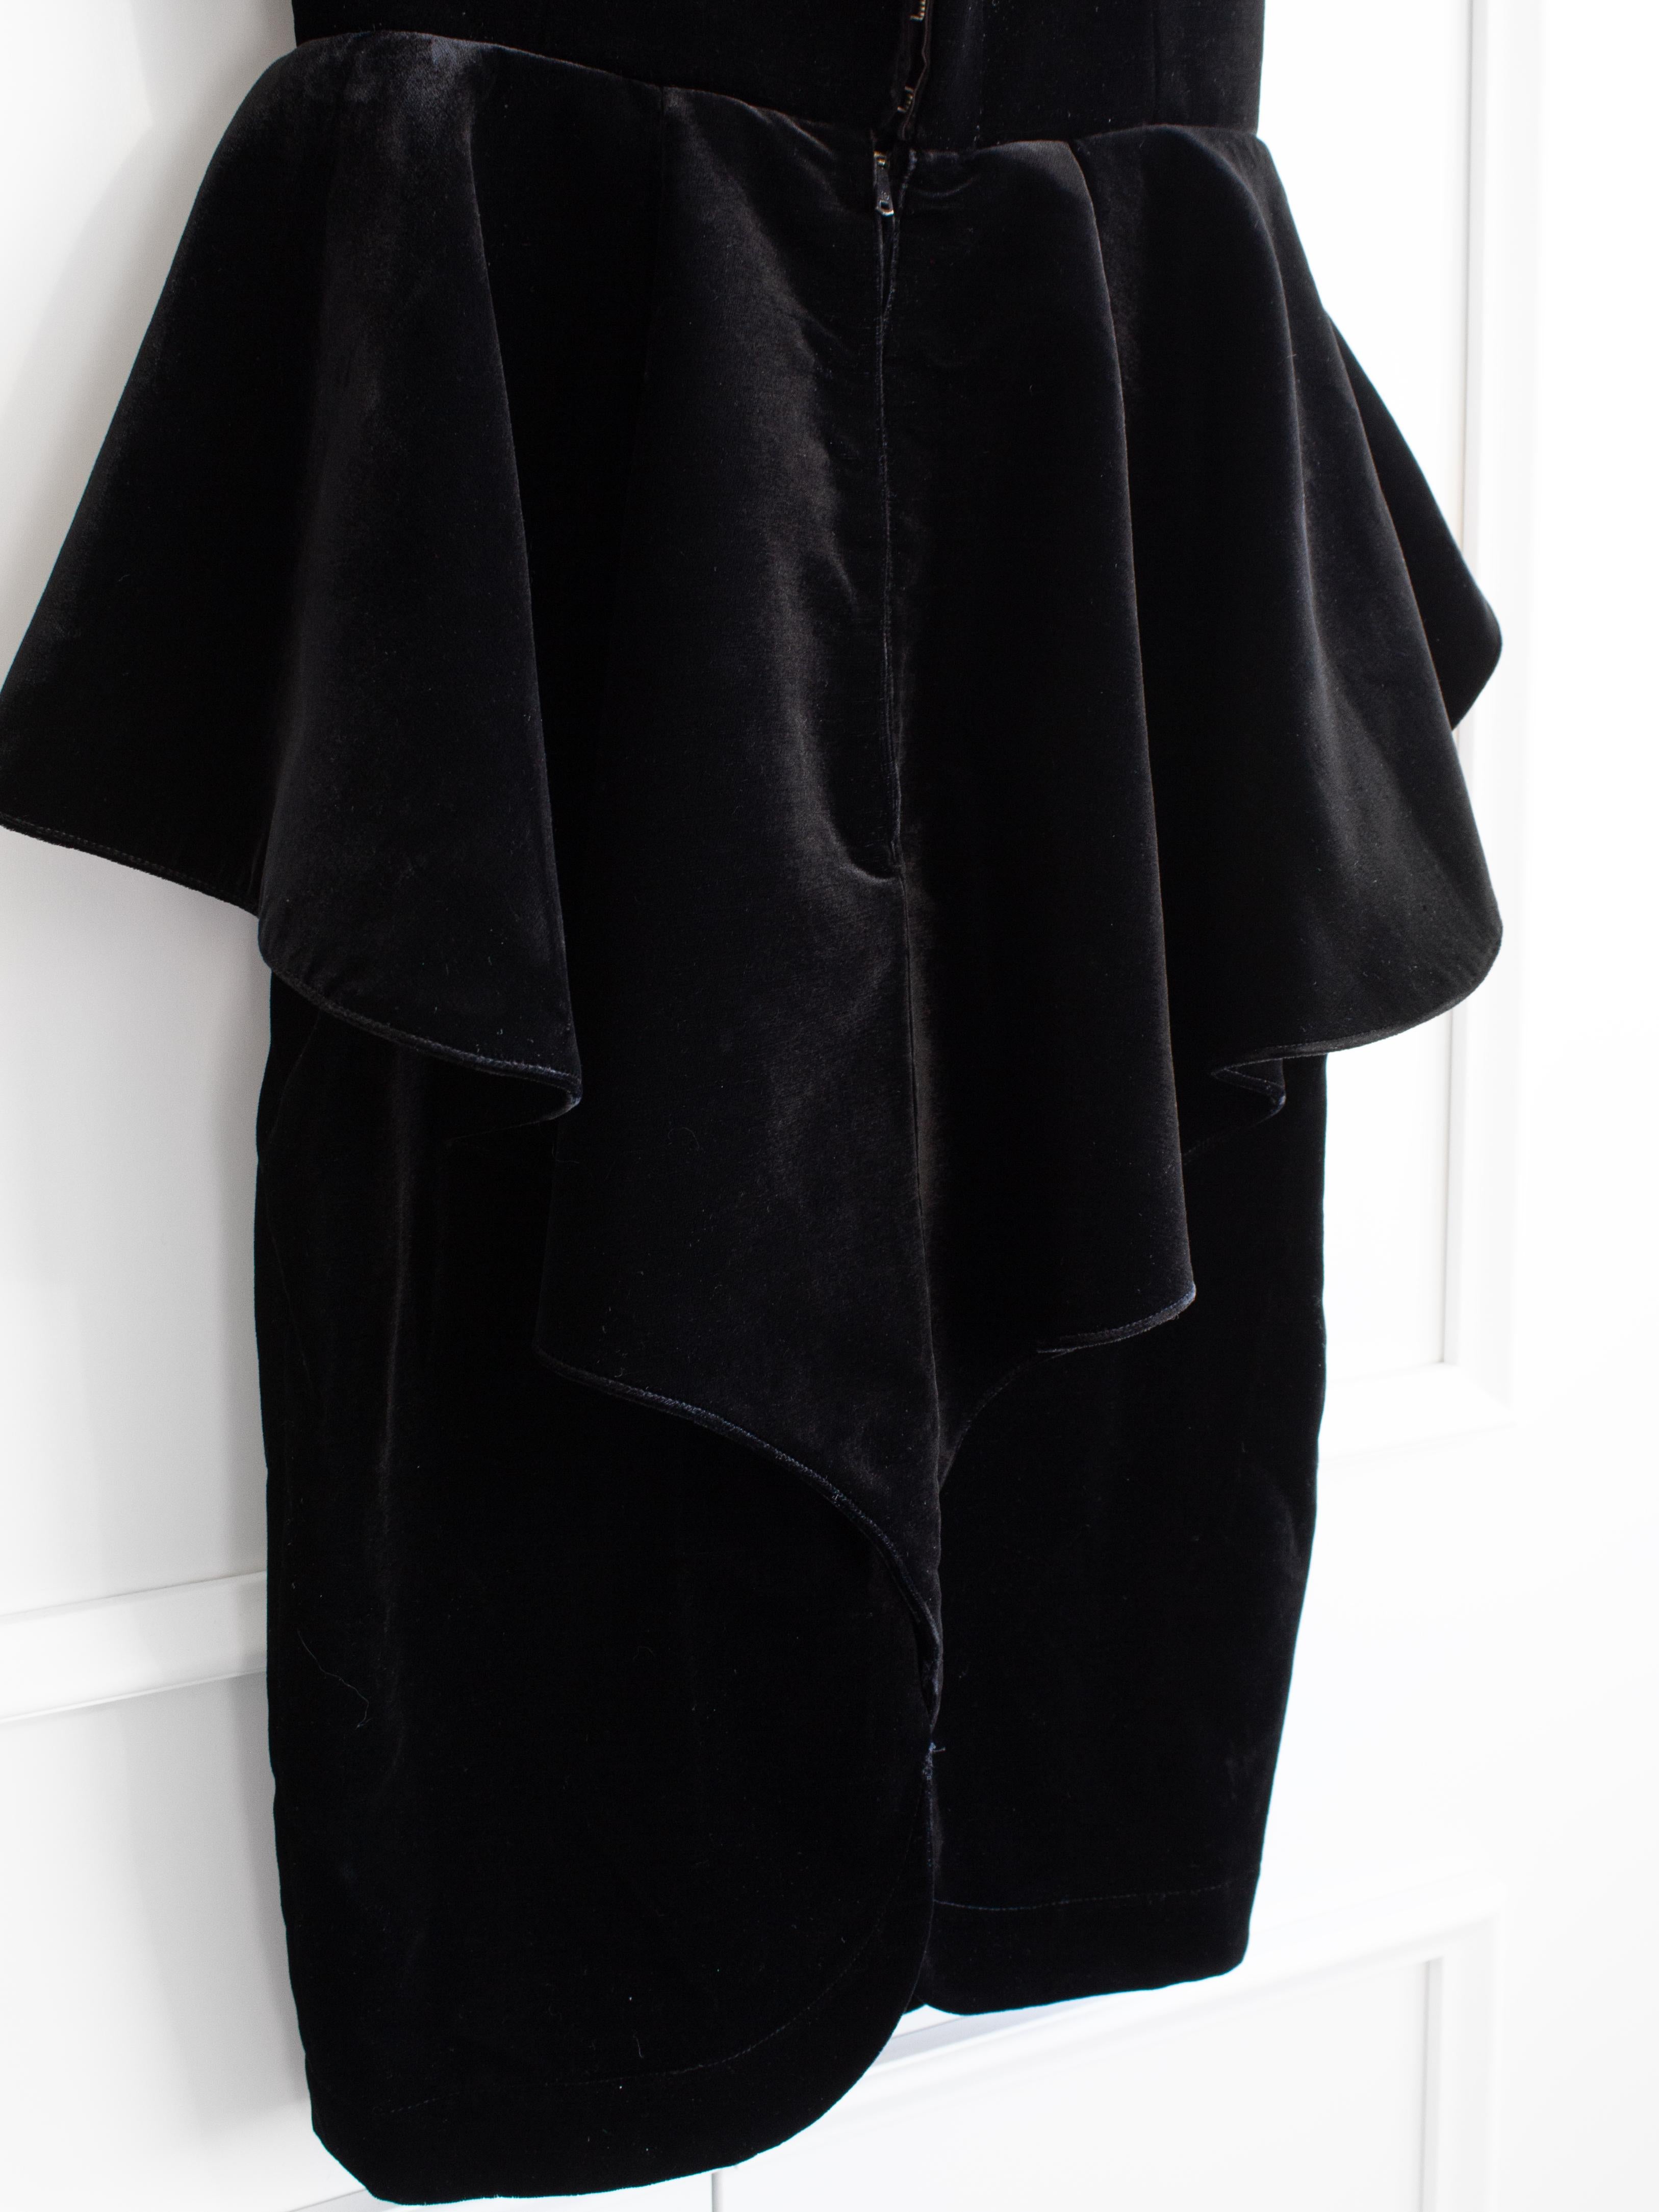 Iconic Thierry Mugler Vintage 1981 Black Velvet Peplum Vampire Dress For Sale 8